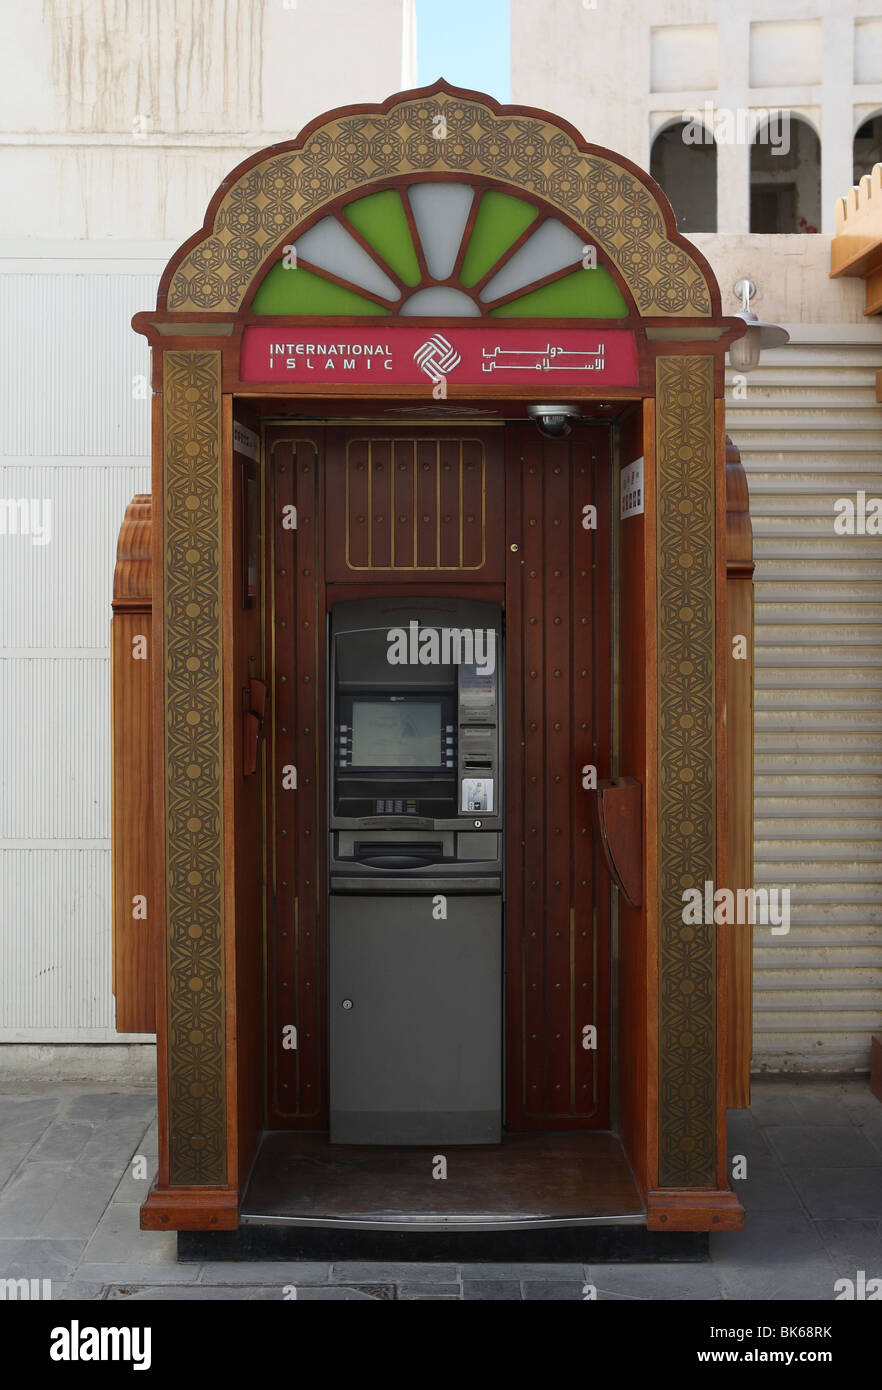 ATM di internazionale Banca Islamica a Doha, in Qatar Foto Stock